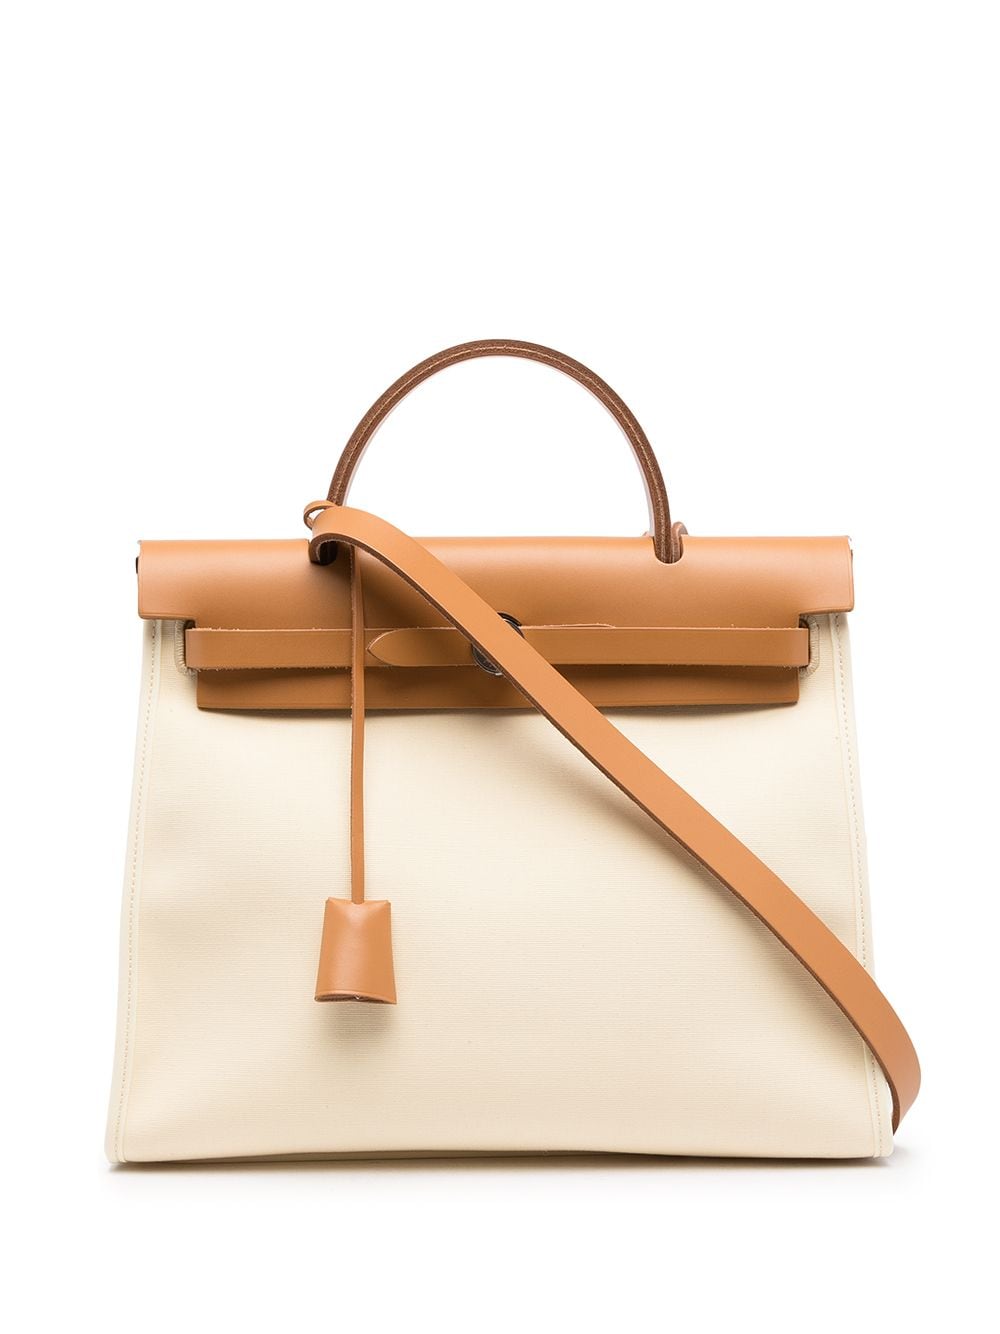 Hermès 2019 pre-owned Herbag Zip 31 2way Bag - Farfetch